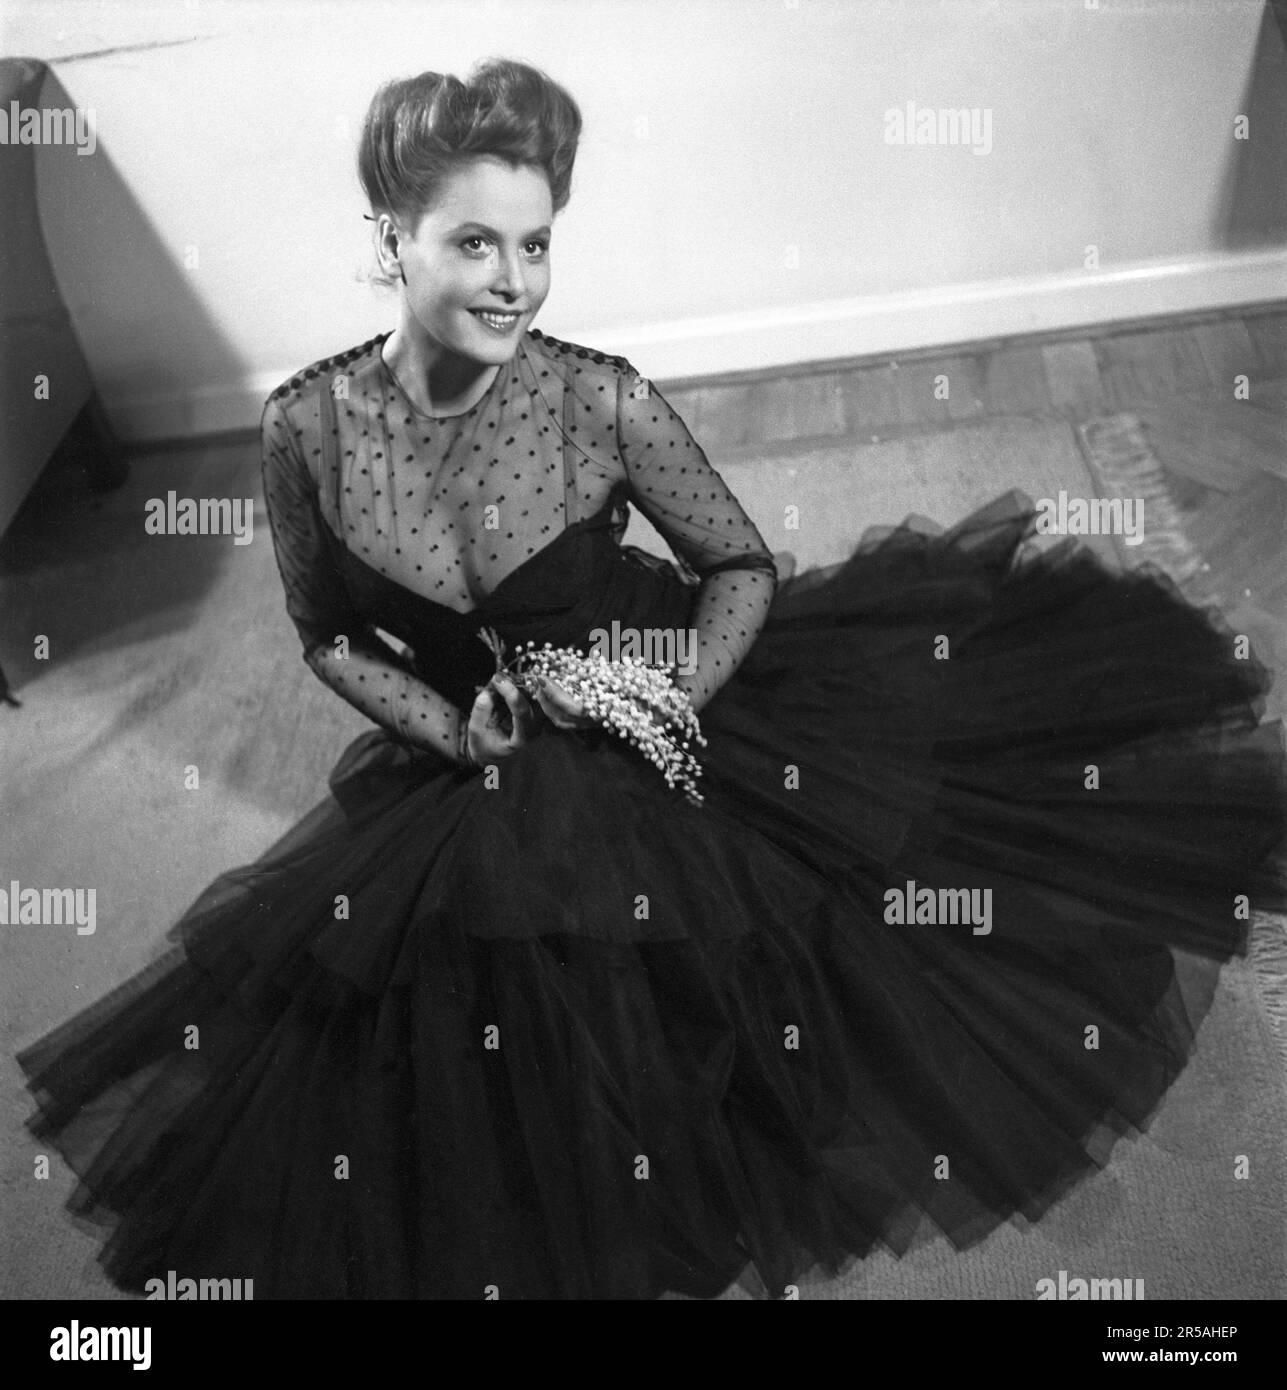 Evening gown 1940s Banque de photographies et d'images à haute résolution -  Alamy